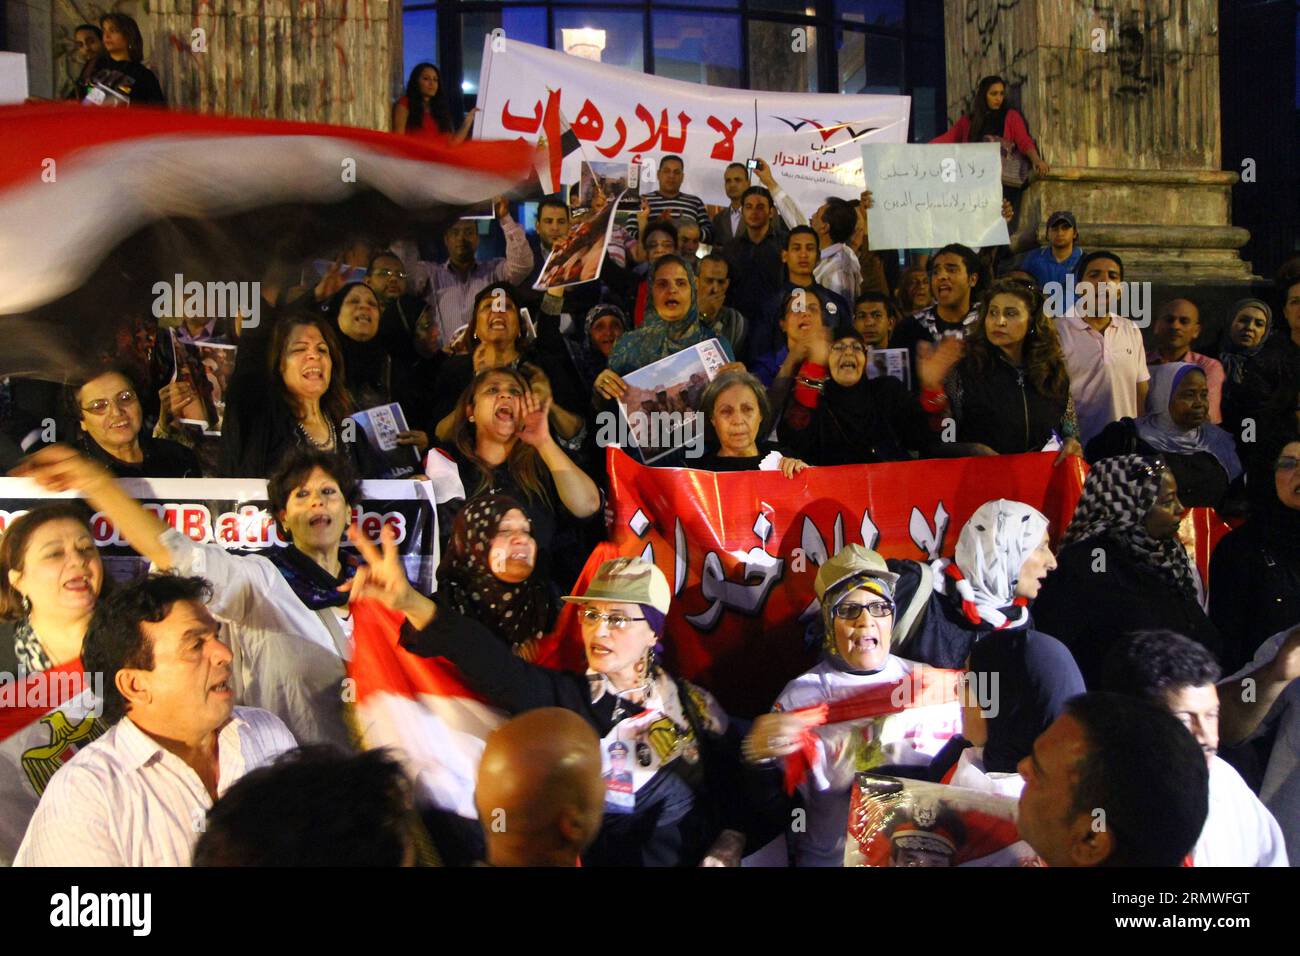 (141027) -- KAIRO, 27. Oktober 2014 -- Unterstützer der ägyptischen Armee nehmen an einer Kundgebung Teil, um militärische Unterstützung zu leisten, um die bewaffneten terroristischen Gruppen im Sinai nach dem Tod vieler Soldaten zu bekämpfen, vor dem Journalistensyndikat in Kairo, Ägypten, 27. Oktober 2014. Eine Reihe tödlicher Angriffe von Militanten im Sinai tötete am vergangenen Freitag mindestens 30 ägyptische Soldaten und verwundete Dutzende. ÄGYPTEN-KAIRO-SINA-ÄGYPTISCHE ARMEE AhmedxGomaa PUBLICATIONxNOTxINxCHN Kairo OKT 27 2014 Anhänger der ägyptischen Armee nehmen an einer Versammlung Teil, um militärische Unterstützung im Kampf gegen die bewaffneten Terrorgruppen im Sinai zu leisten Stockfoto